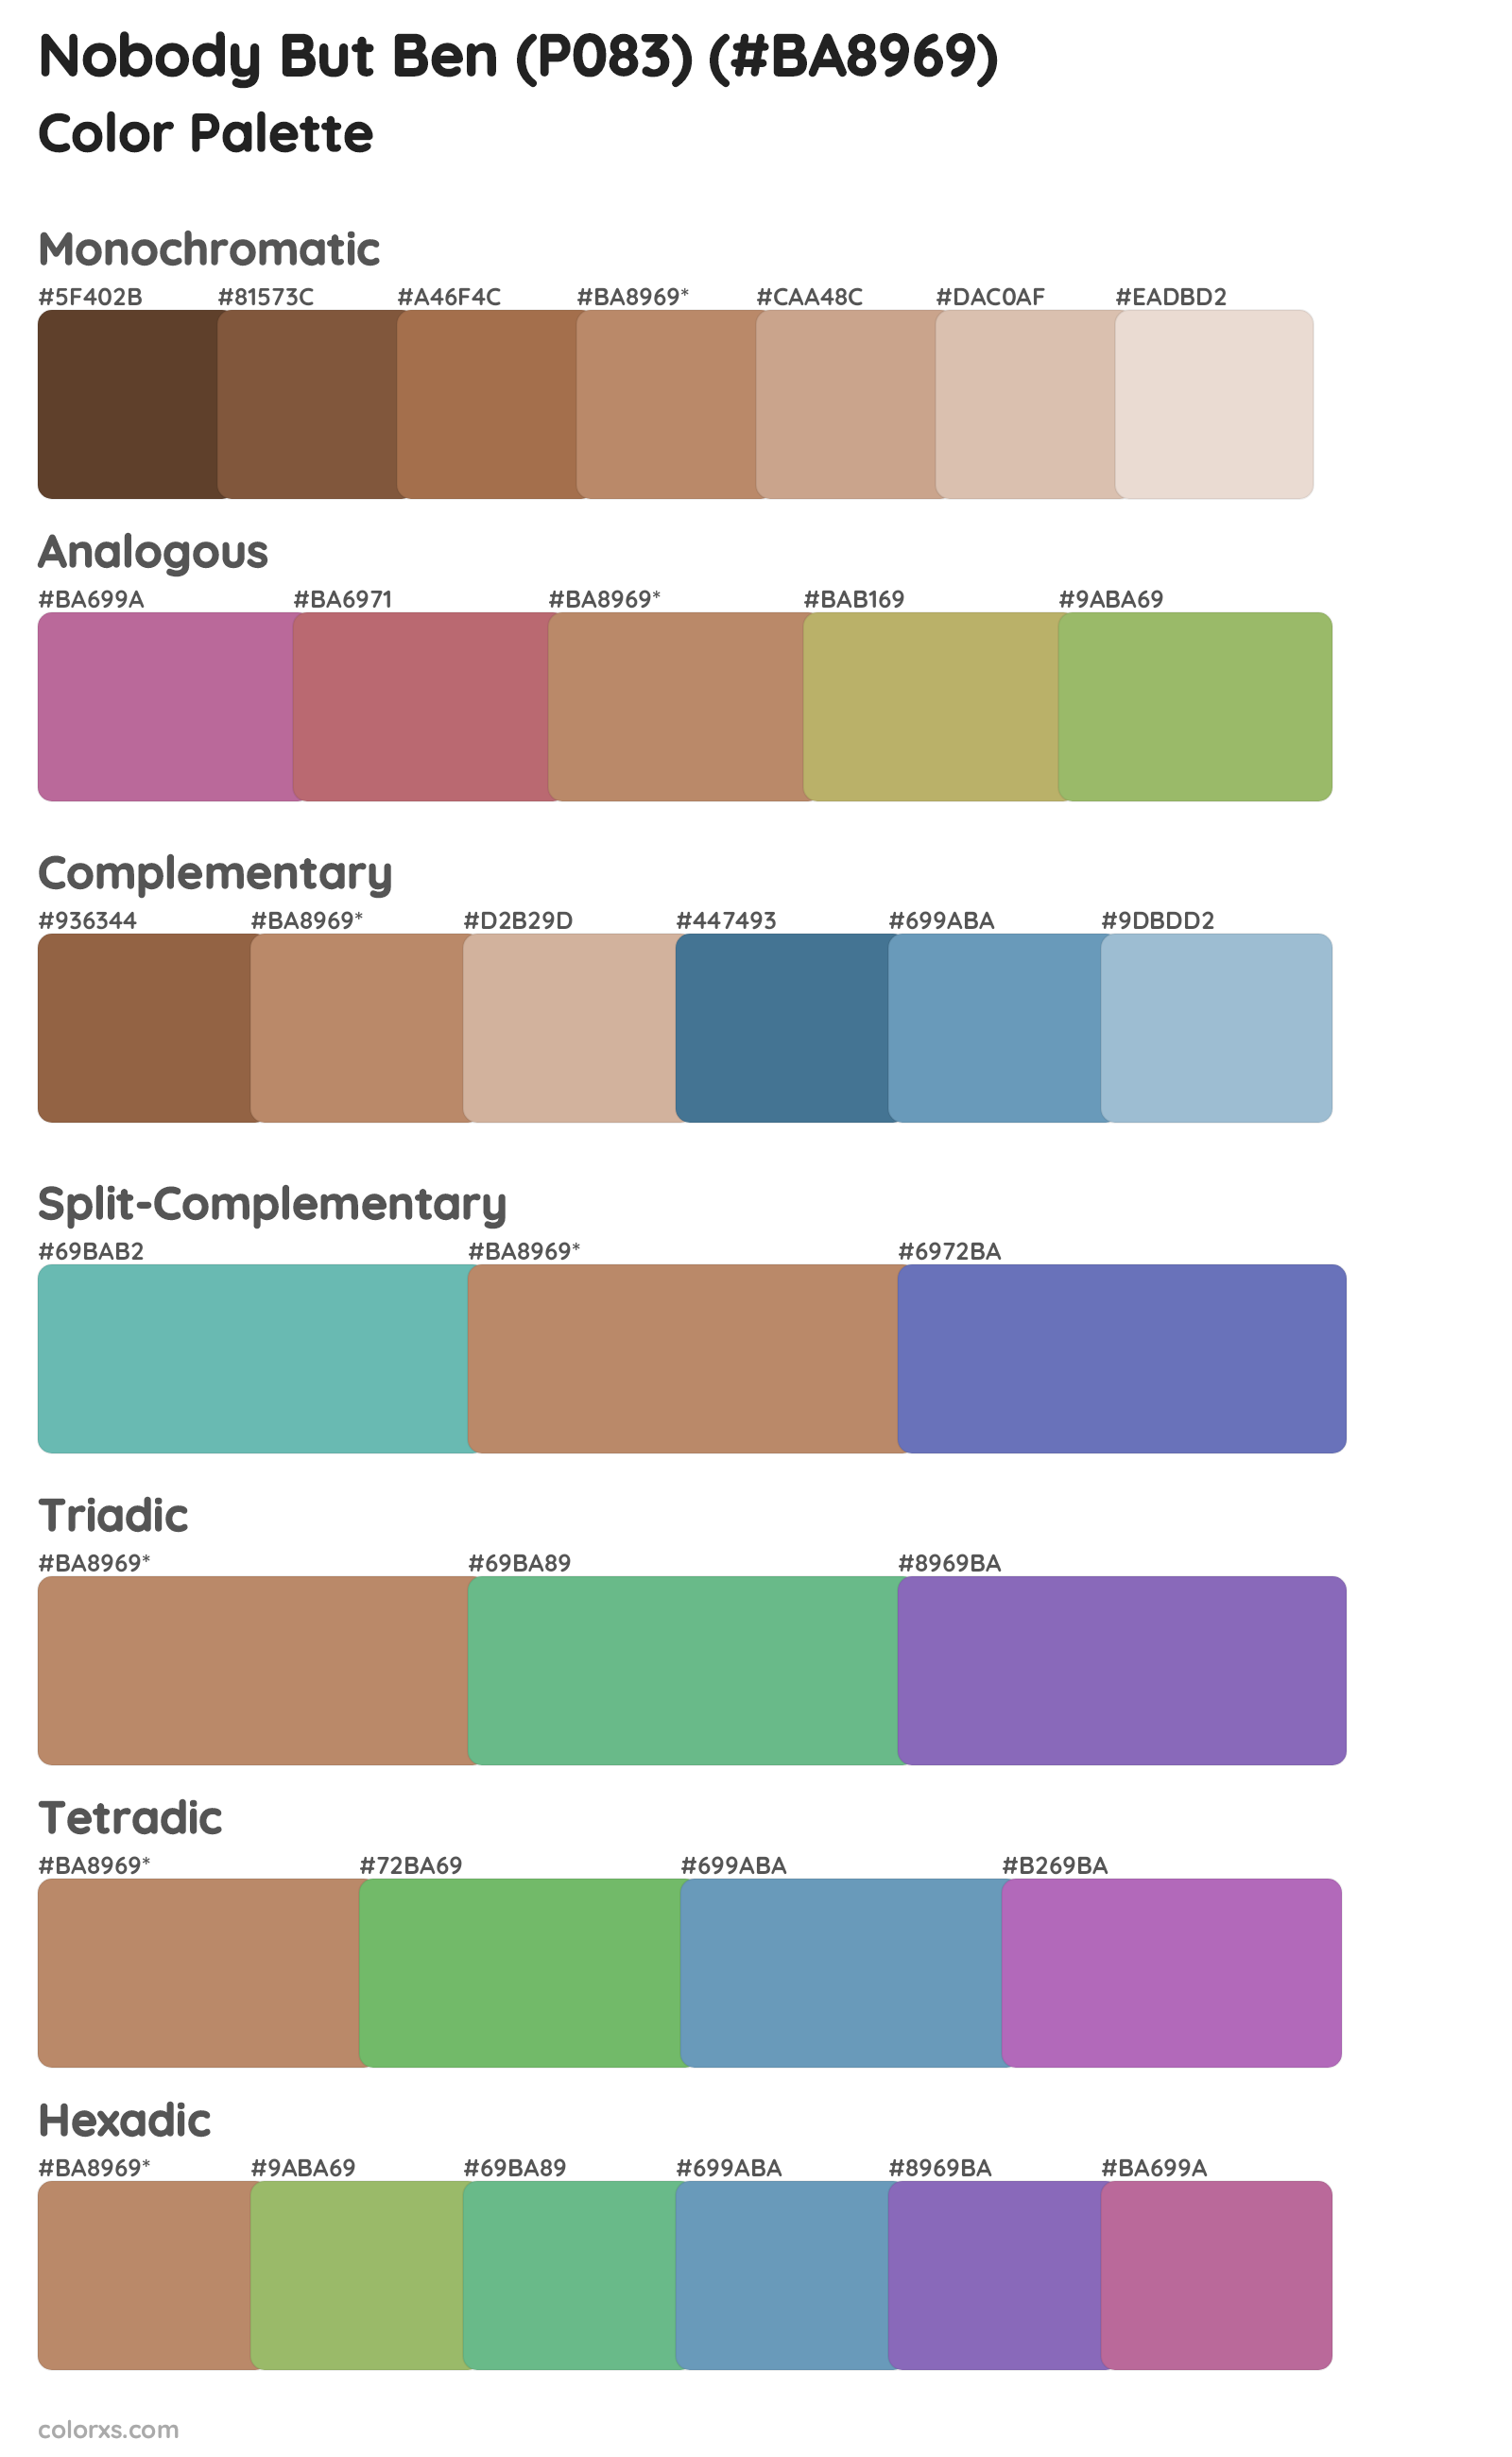 Nobody But Ben (P083) Color Scheme Palettes